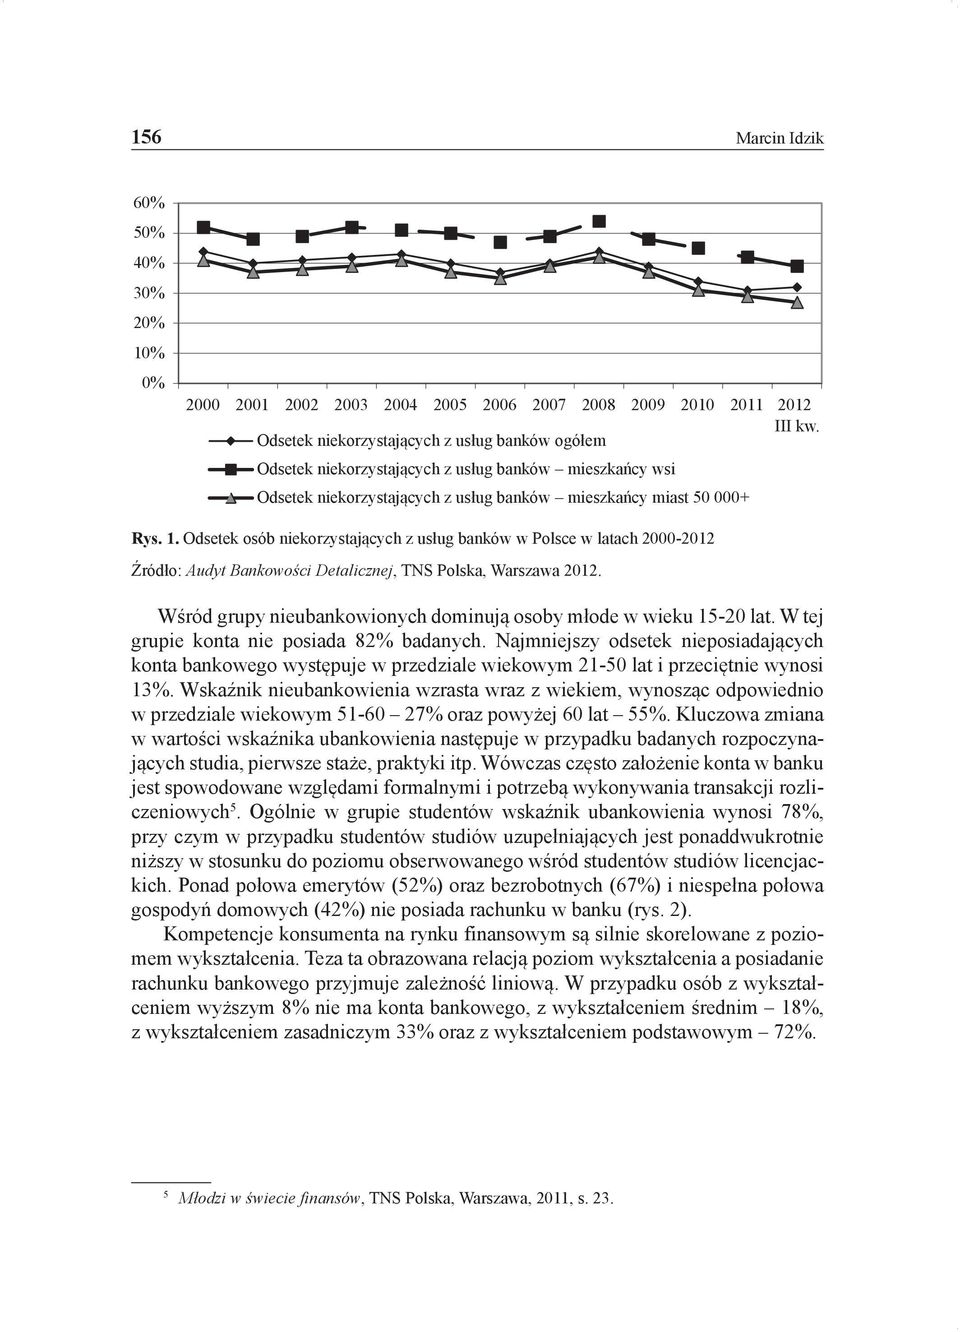 Odsetek osób niekorzystających z usług banków w Polsce w latach 2000-2012 Źródło: Audyt Bankowości Detalicznej, TNS Polska, Warszawa 2012.